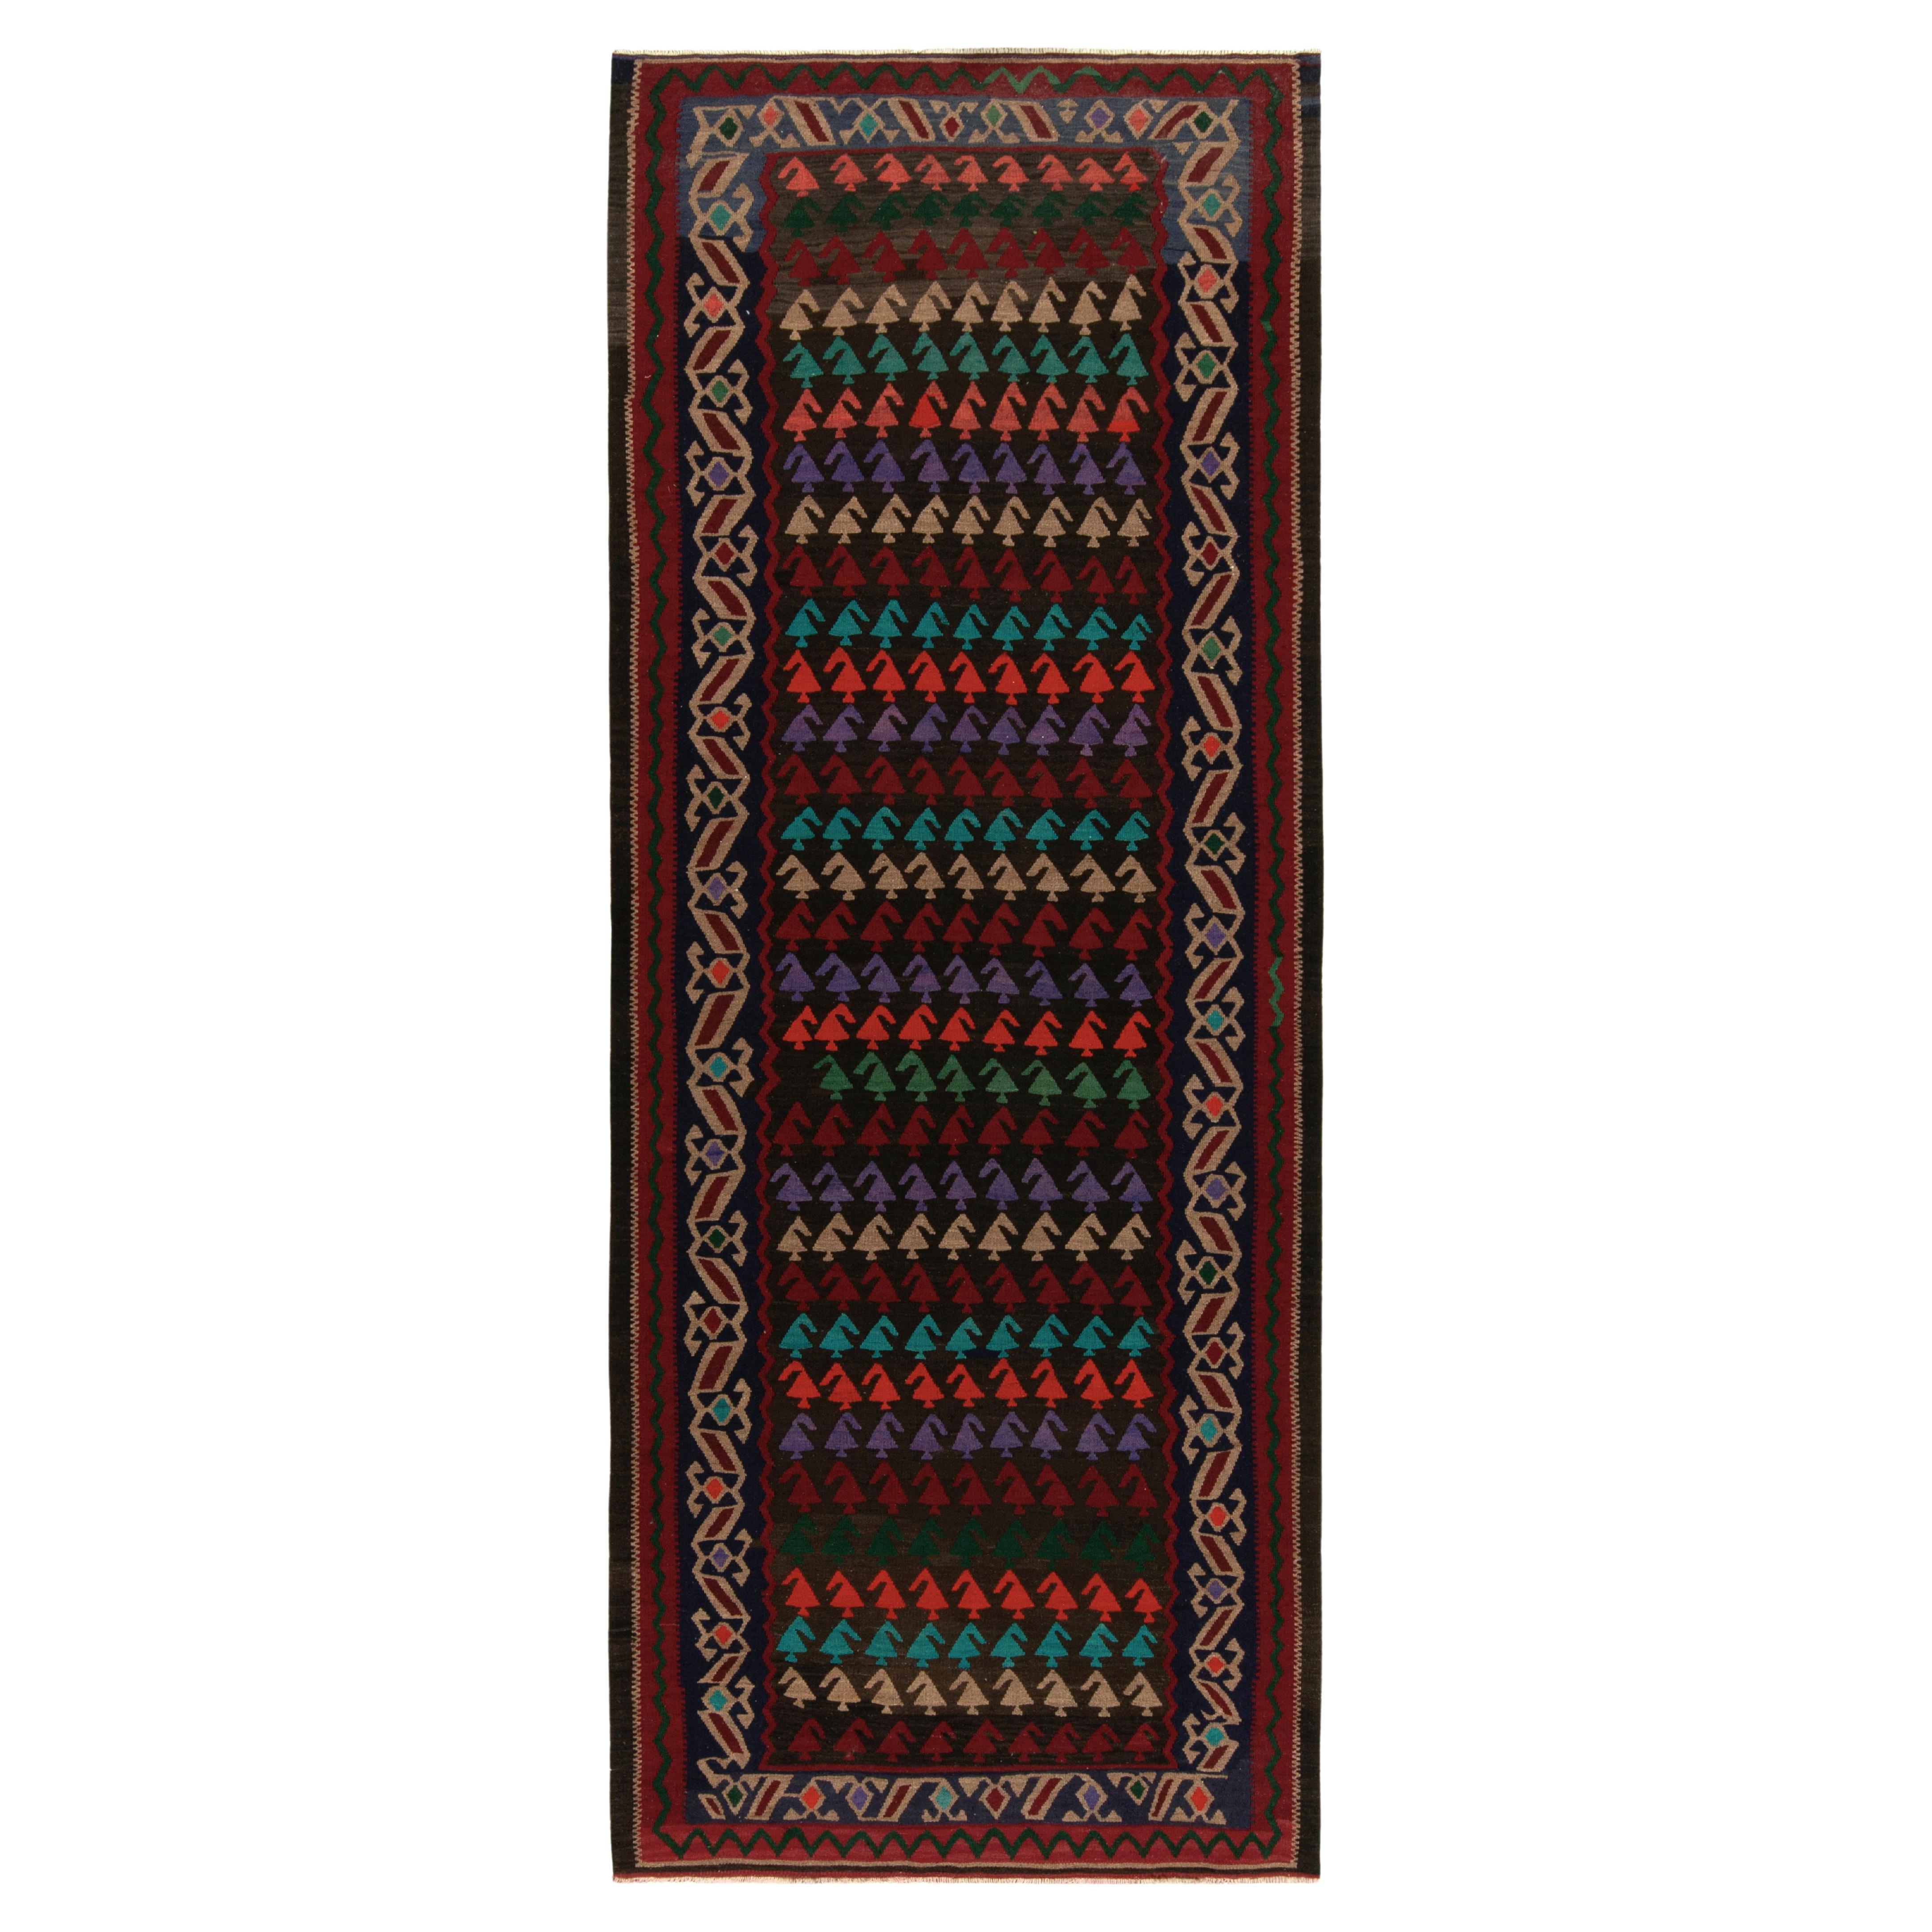 Vintage Turkish Kilim Rug in Red, Beige-Brown & MultiHued Tribal by Rug & Kilim